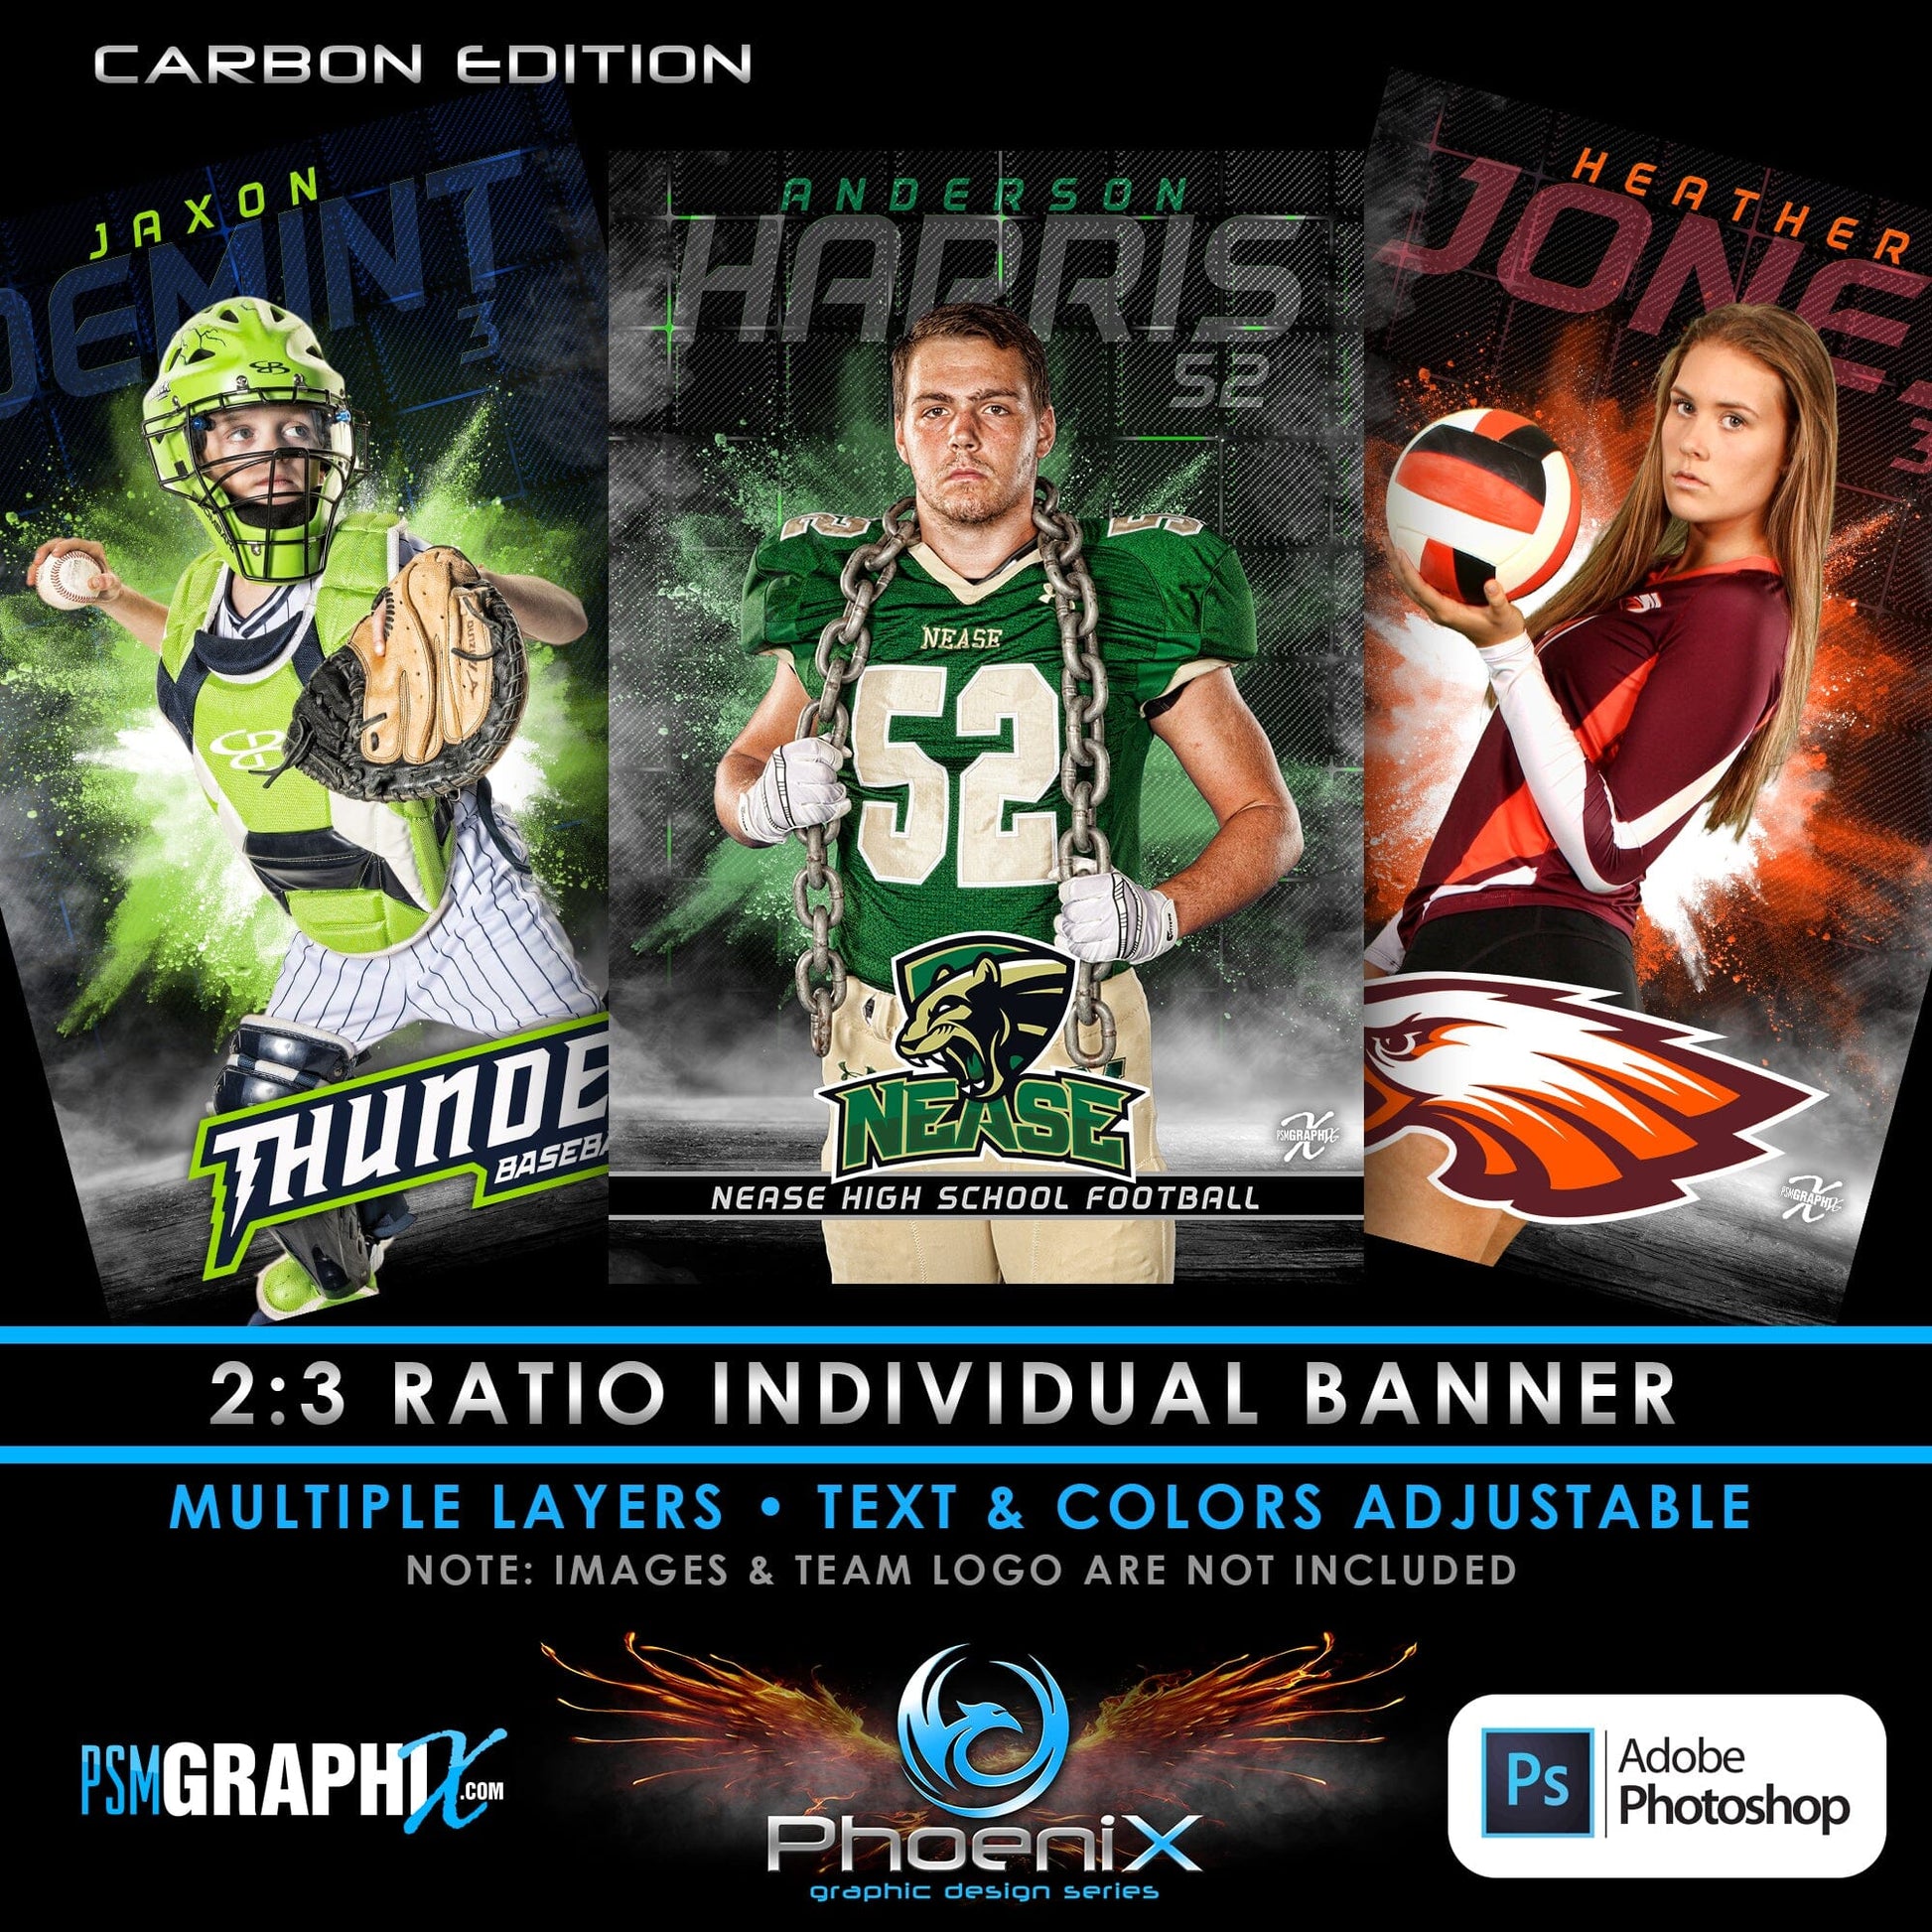 CARBON - Phoenix Series - Full Collection Bundle-Photoshop Template - PSMGraphix